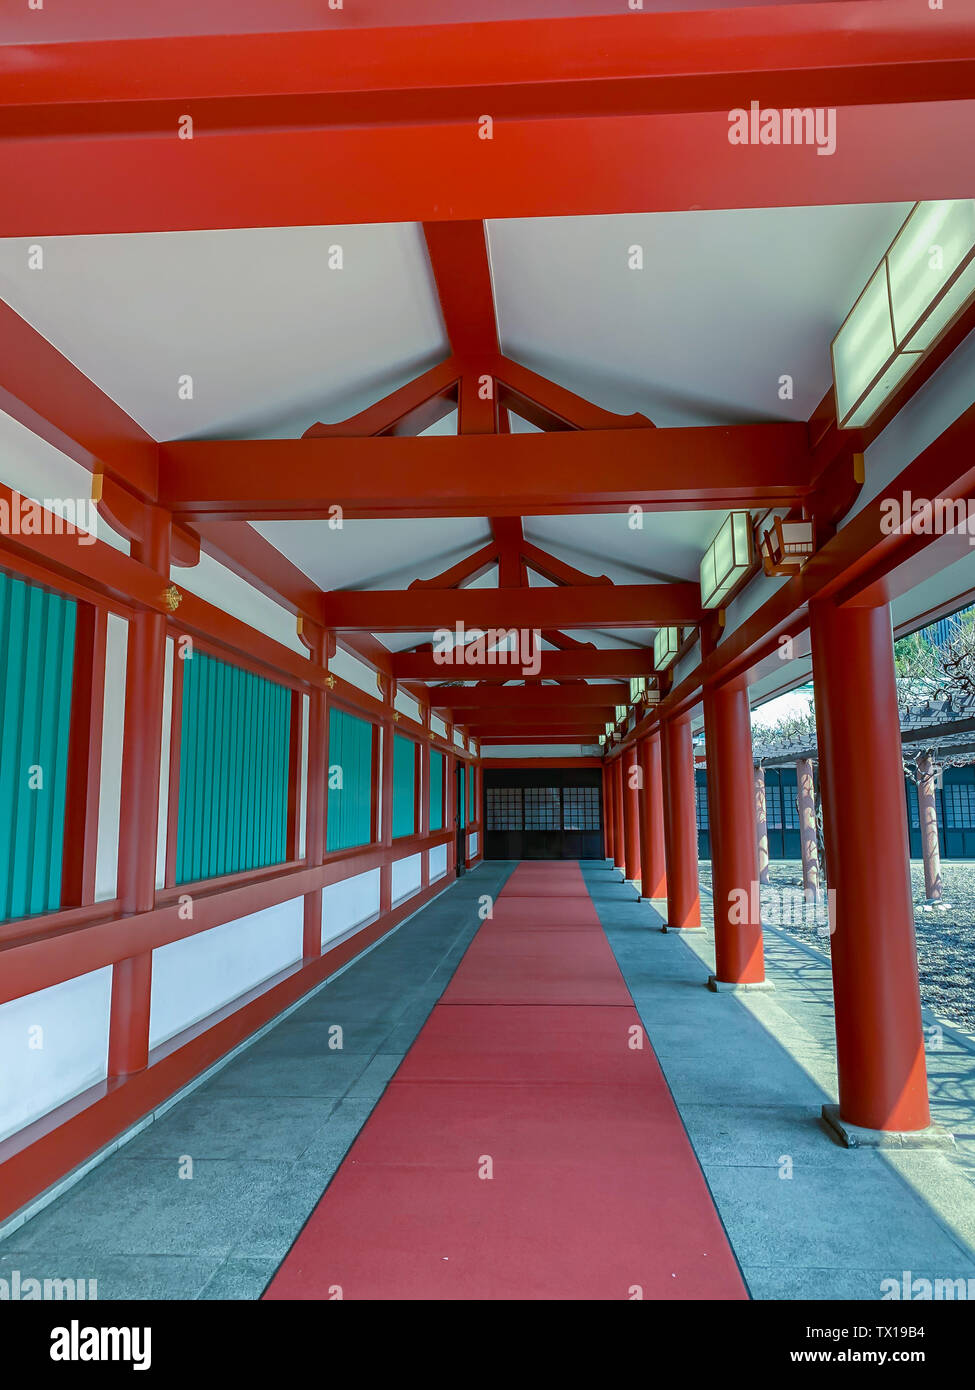 Traditionelle Japanische Architektur an ein Shinto Schrein. Vermillion farbigen Säulen line einen schattigen Korridor an der alten Hie-Jinja Schrein, Tokio Stockfoto